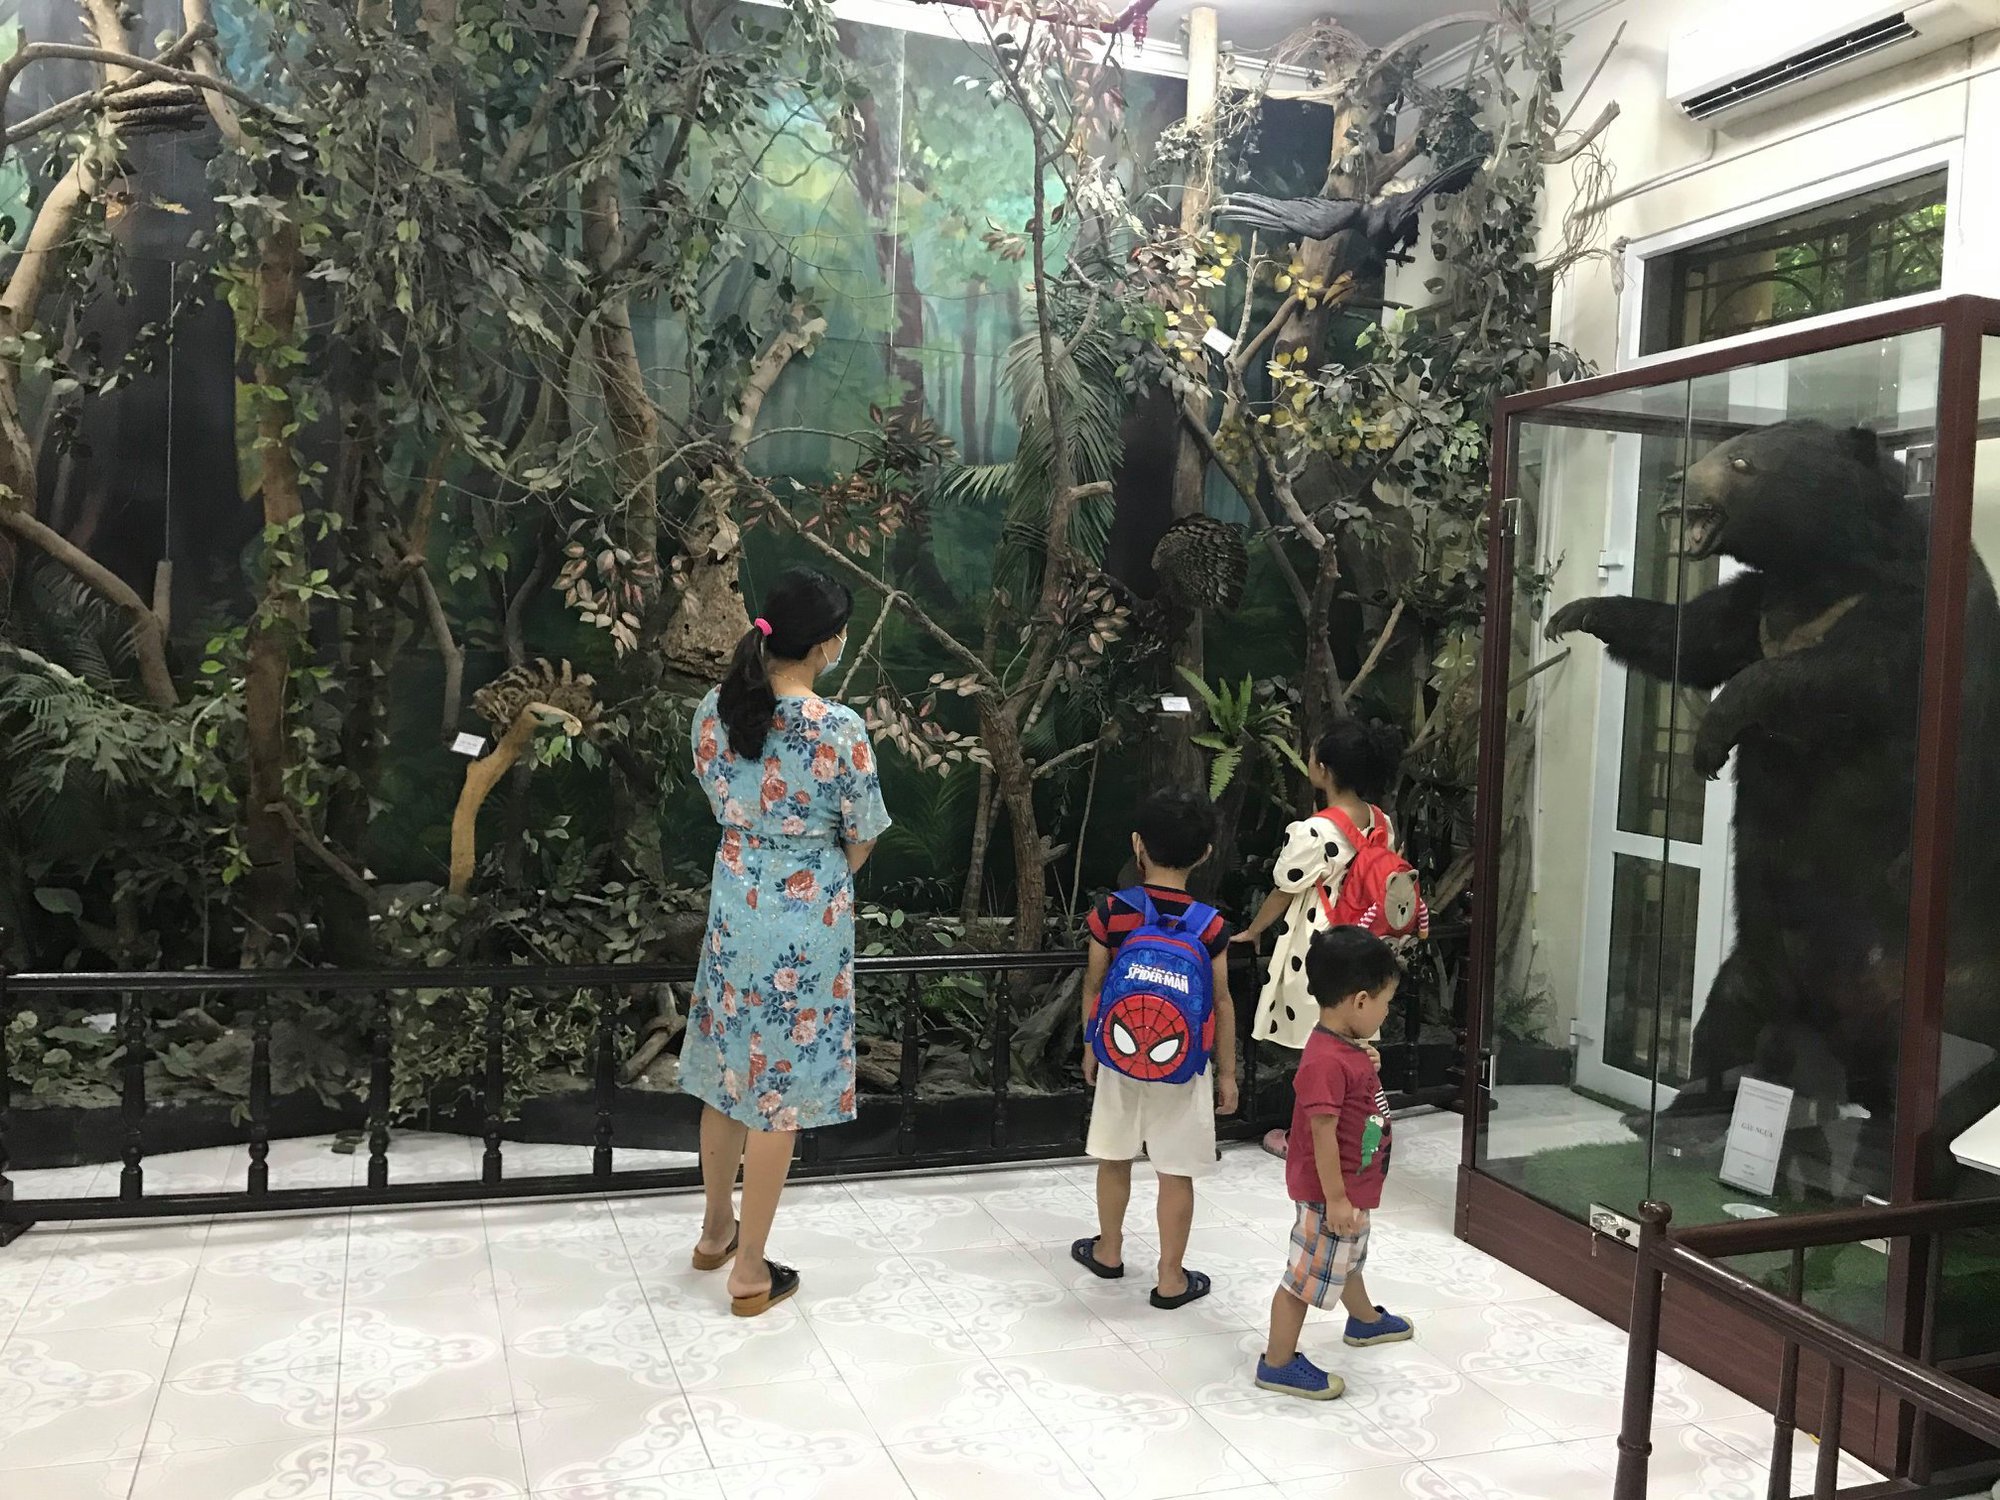 Khám phá Bảo tàng rừng Việt Nam cùng trải nghiệm vườn thực vật quý hiếm của thiên nhiên tuyệt diệu - Ảnh 1.